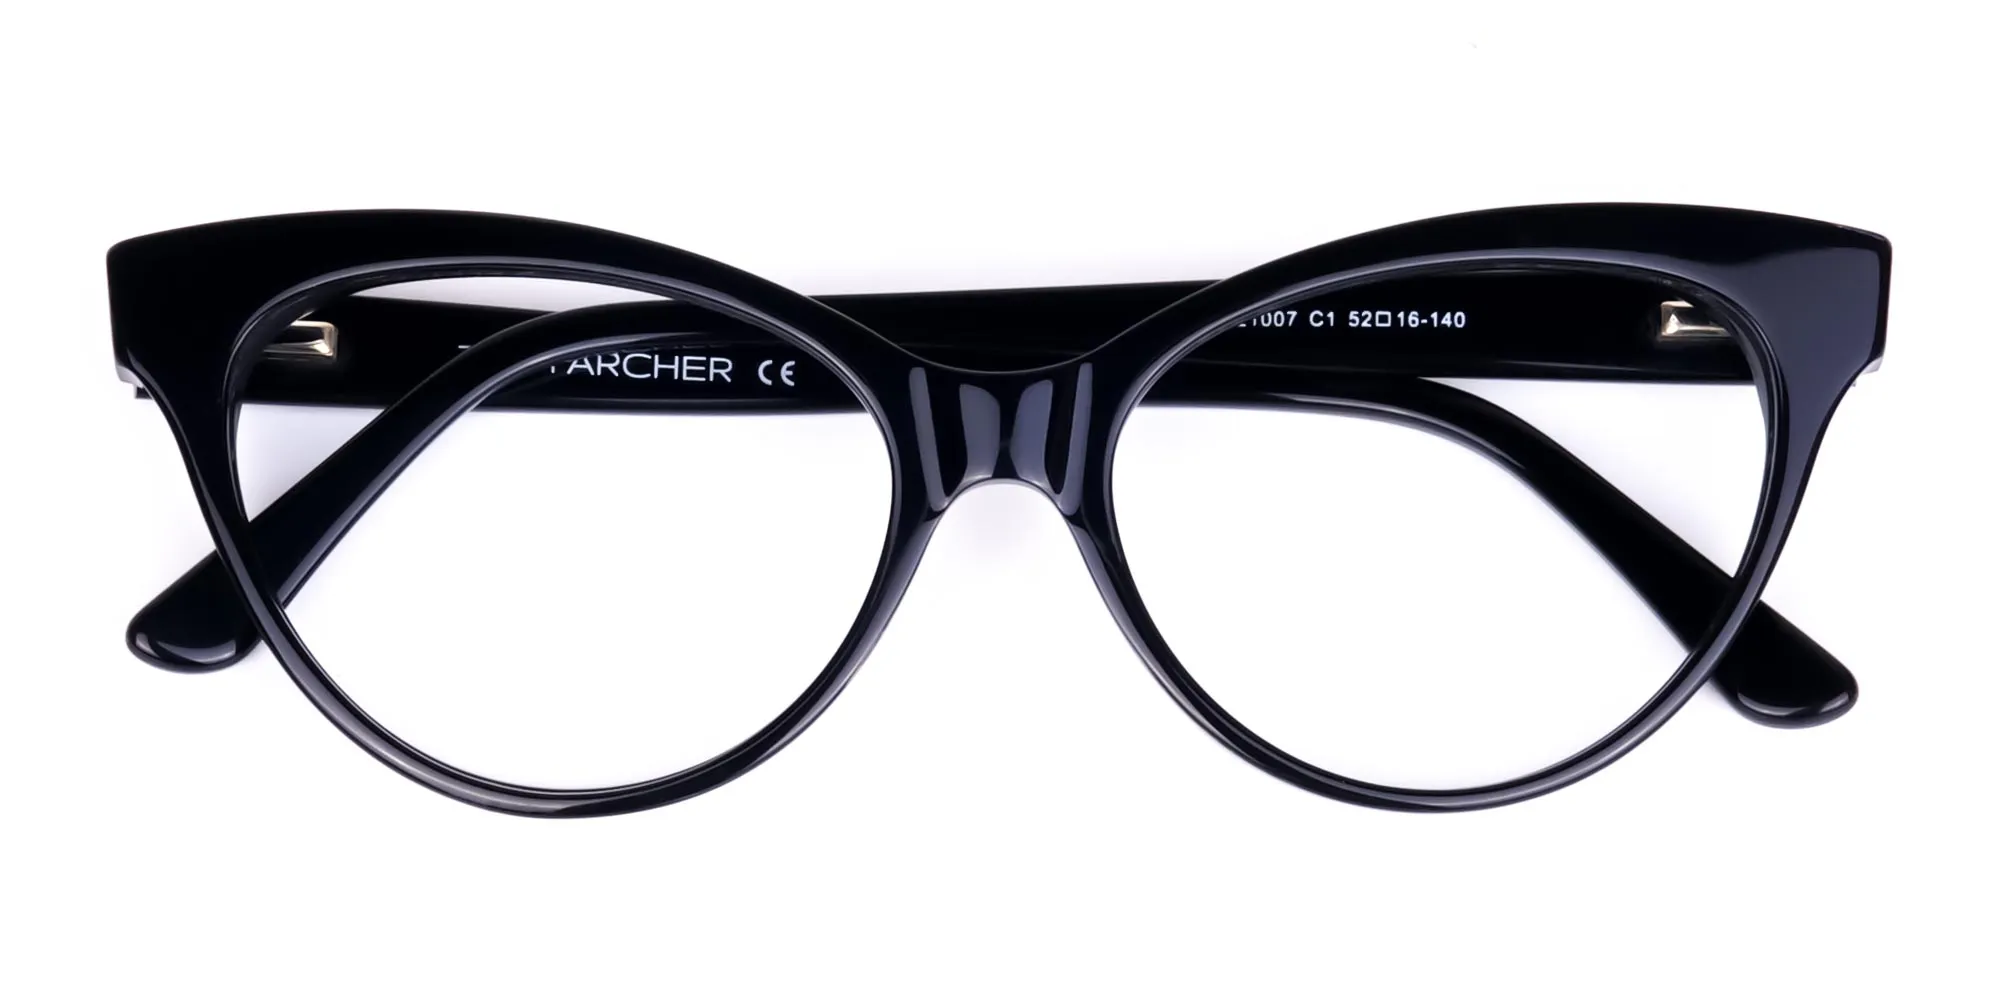 Black-Cat-Eye-Glasses-Frames-2